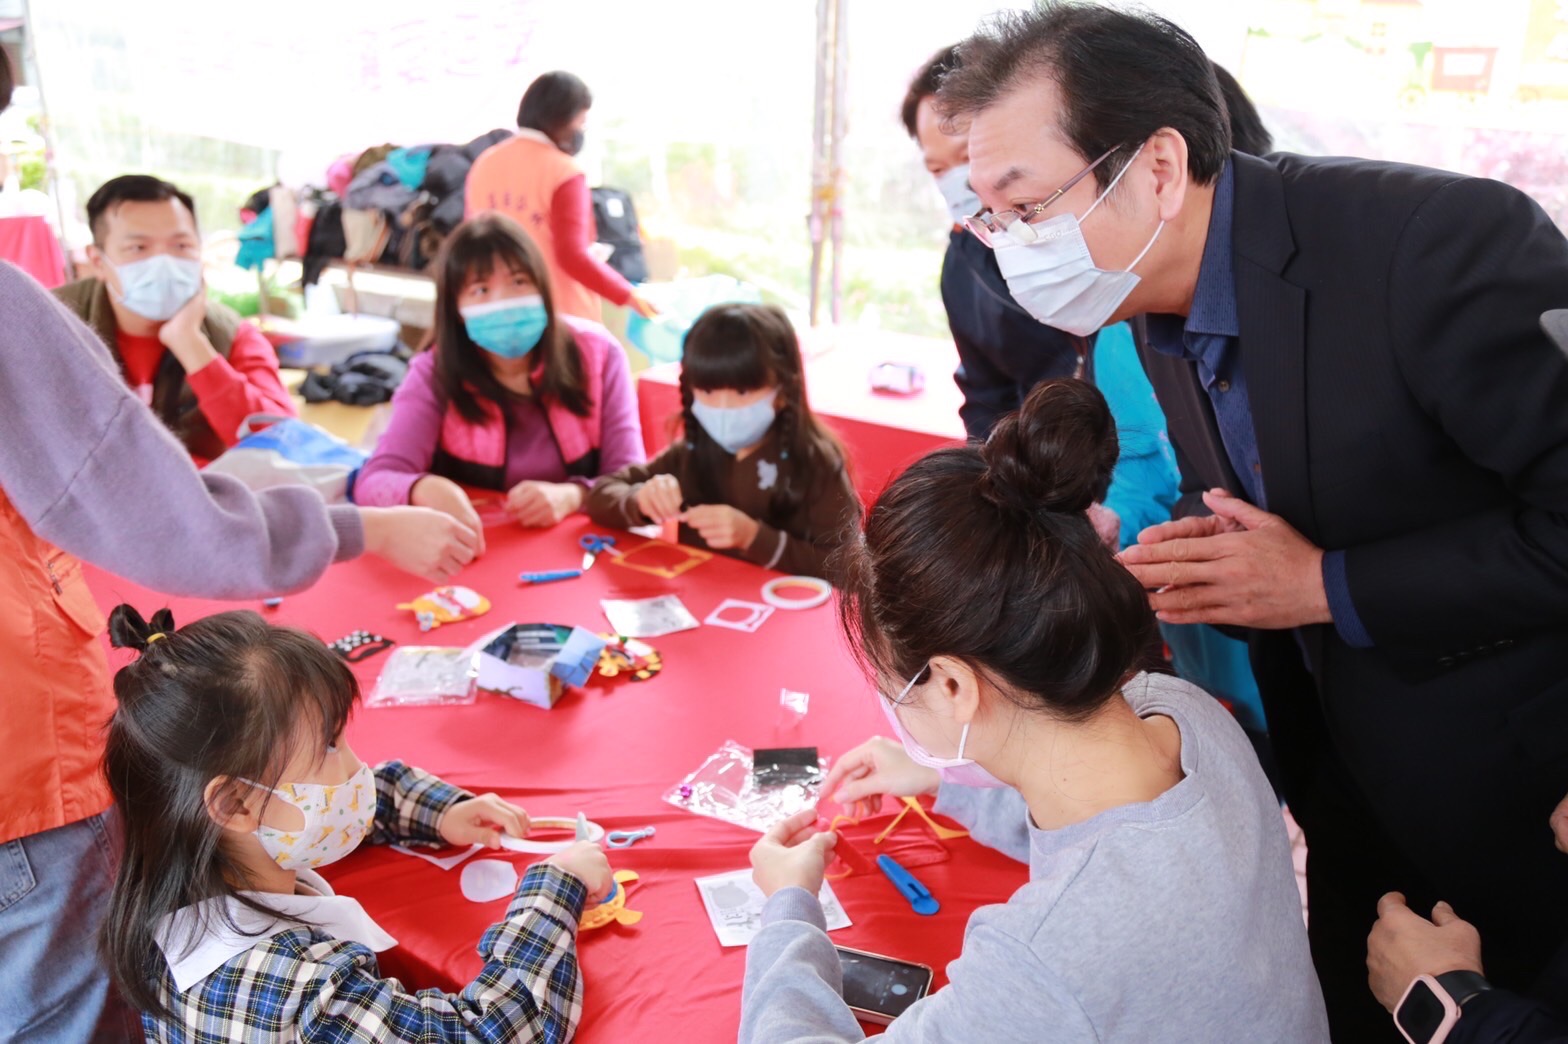 Di lokasi acara, ada stand untuk kegiatan DIY seperti pembuatan angpao harimau dan jimat Q Tiger. Sumber: Kantor Distrik Hsinchuang